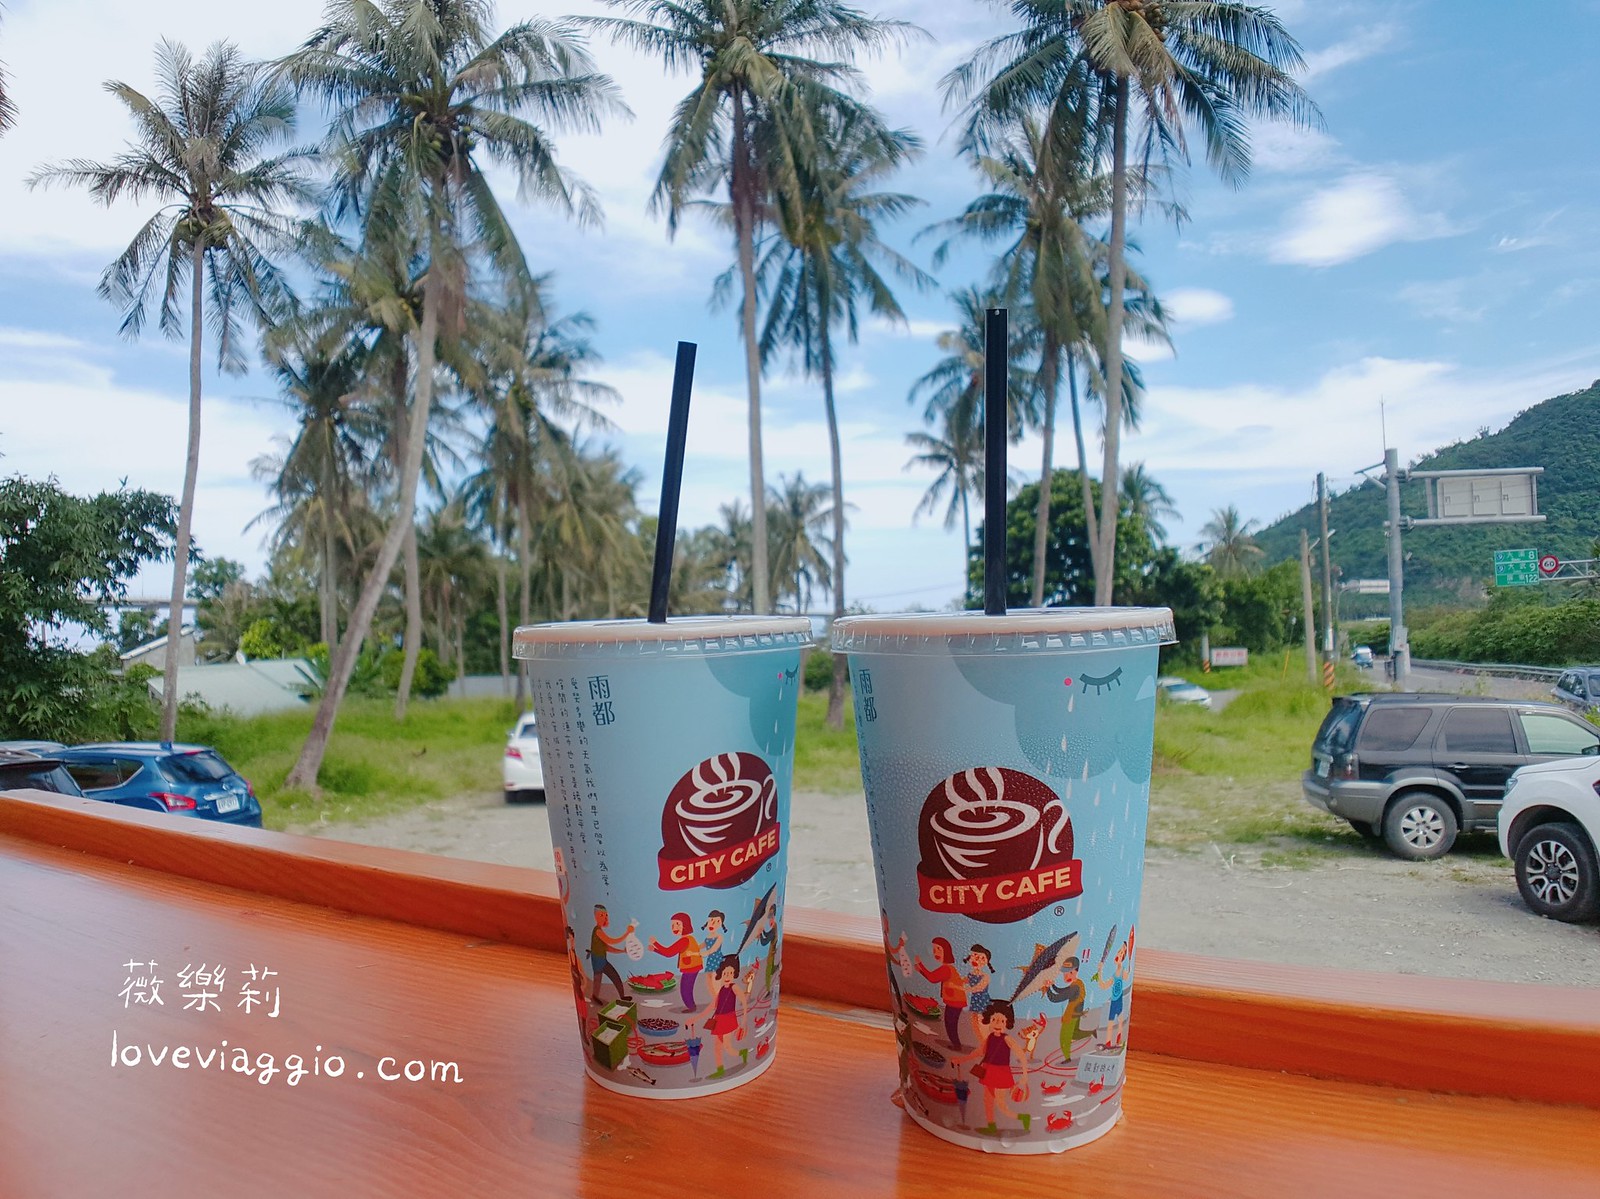 【台東 Taitung】風和日麗新南迴公路慢旅行×11個台東海岸景點分享 @薇樂莉 Love Viaggio | 旅行.生活.攝影